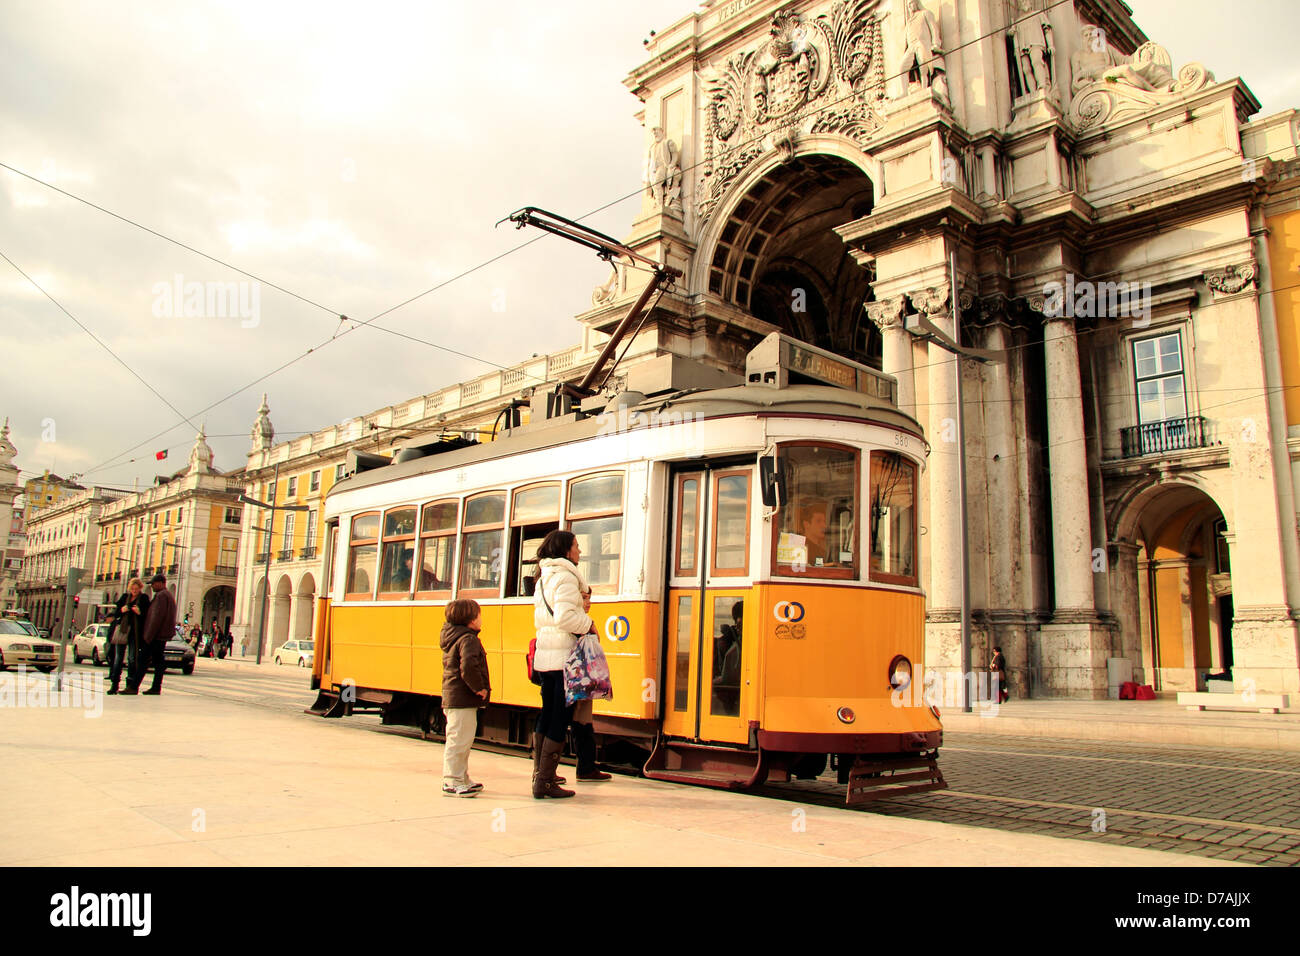 La madre e il bambino in attesa a bordo del tram, Arco Trionfale, Commercial Square, Praca do Comercio, Lisbona, Portogallo Foto Stock